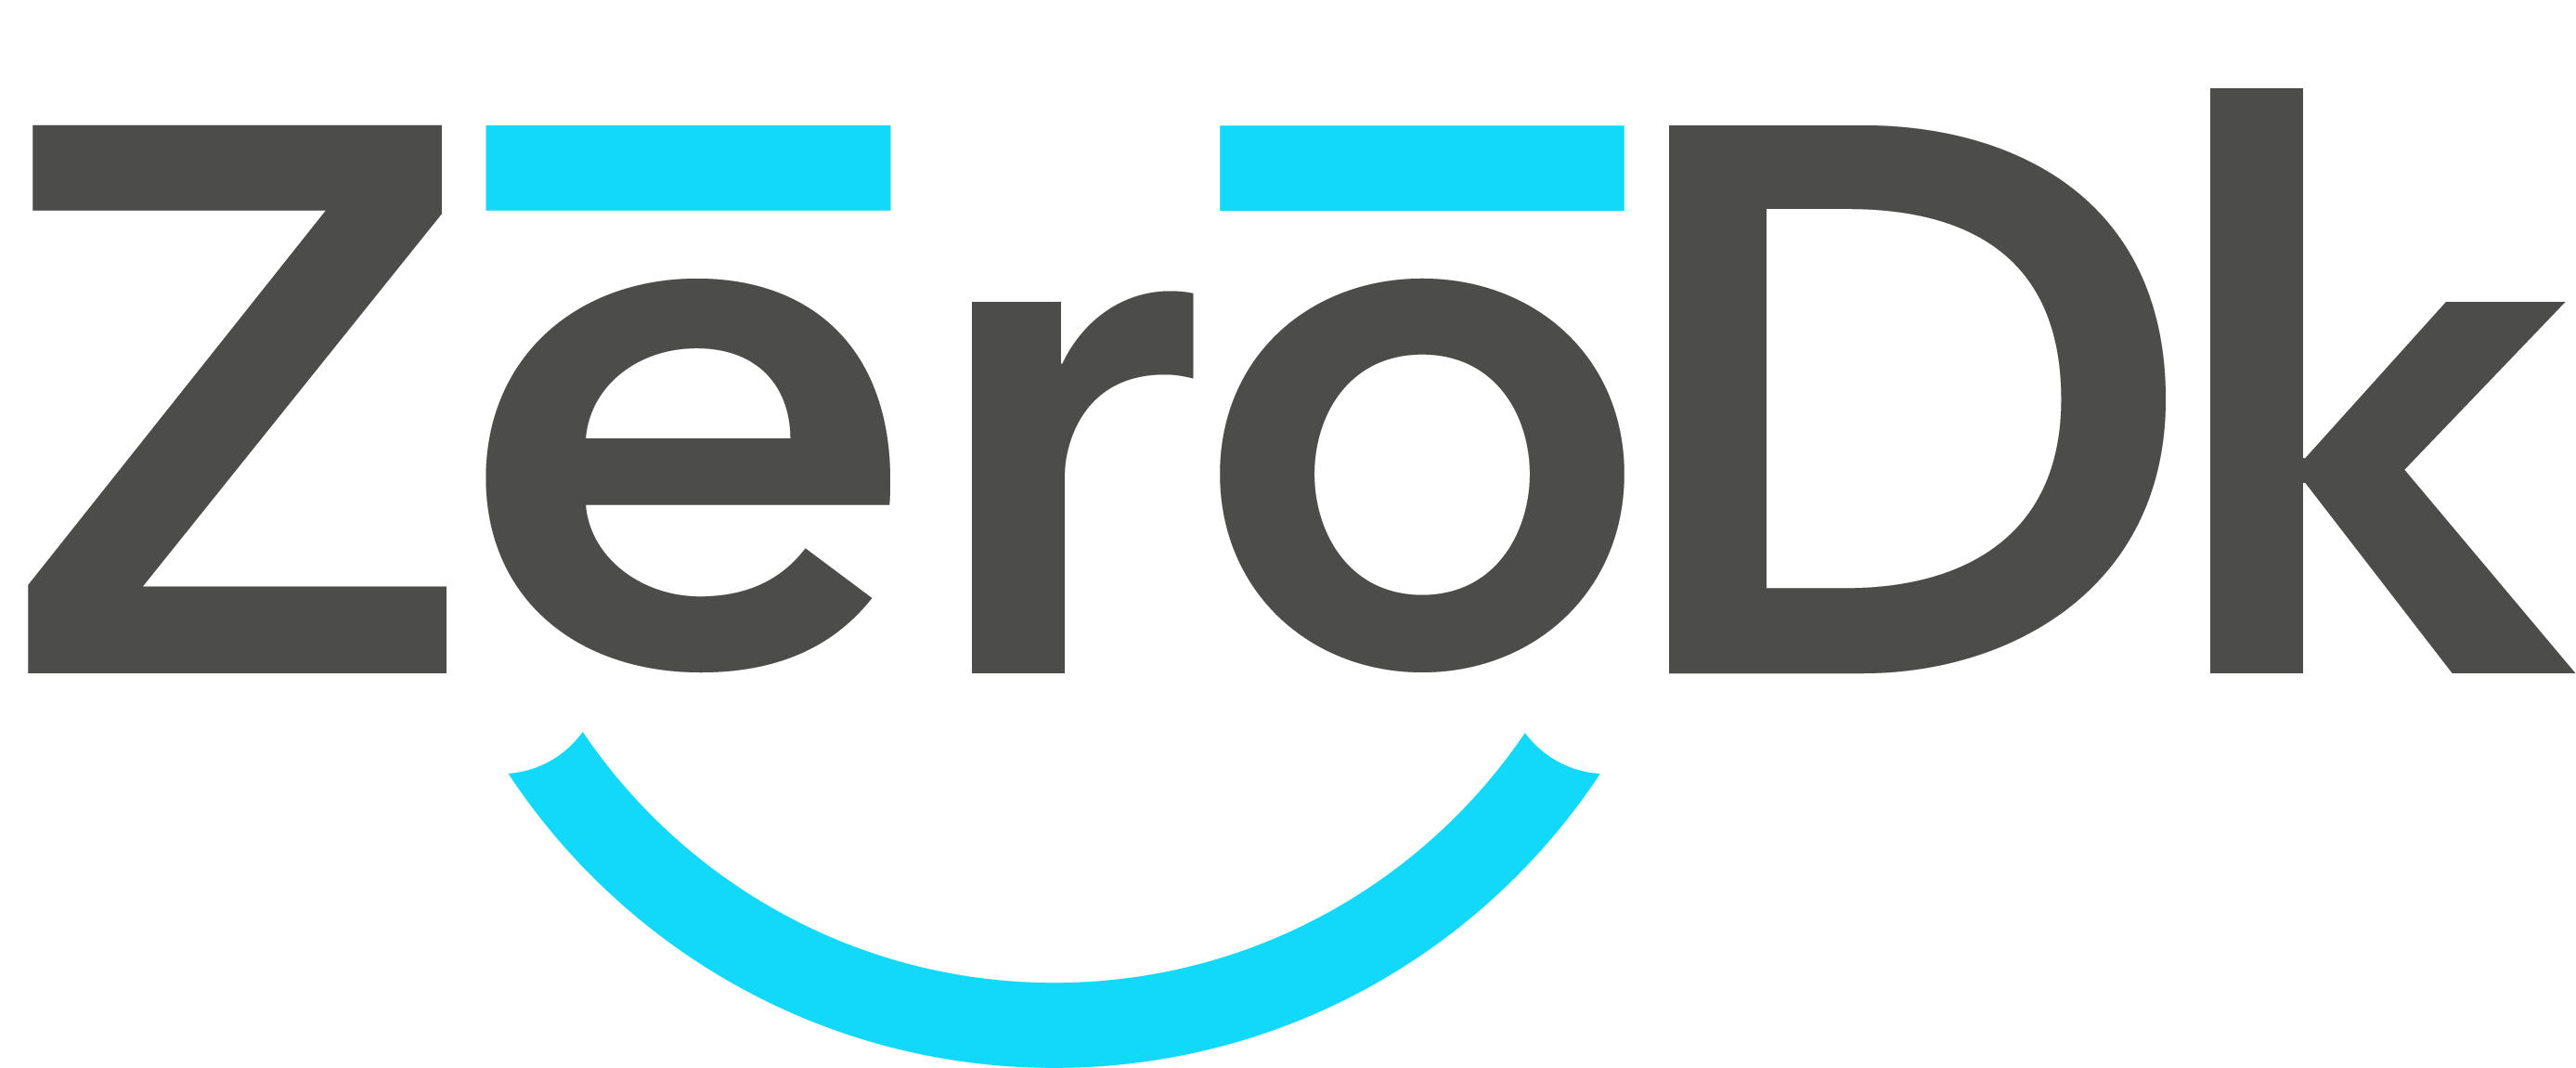 Zerodk vector